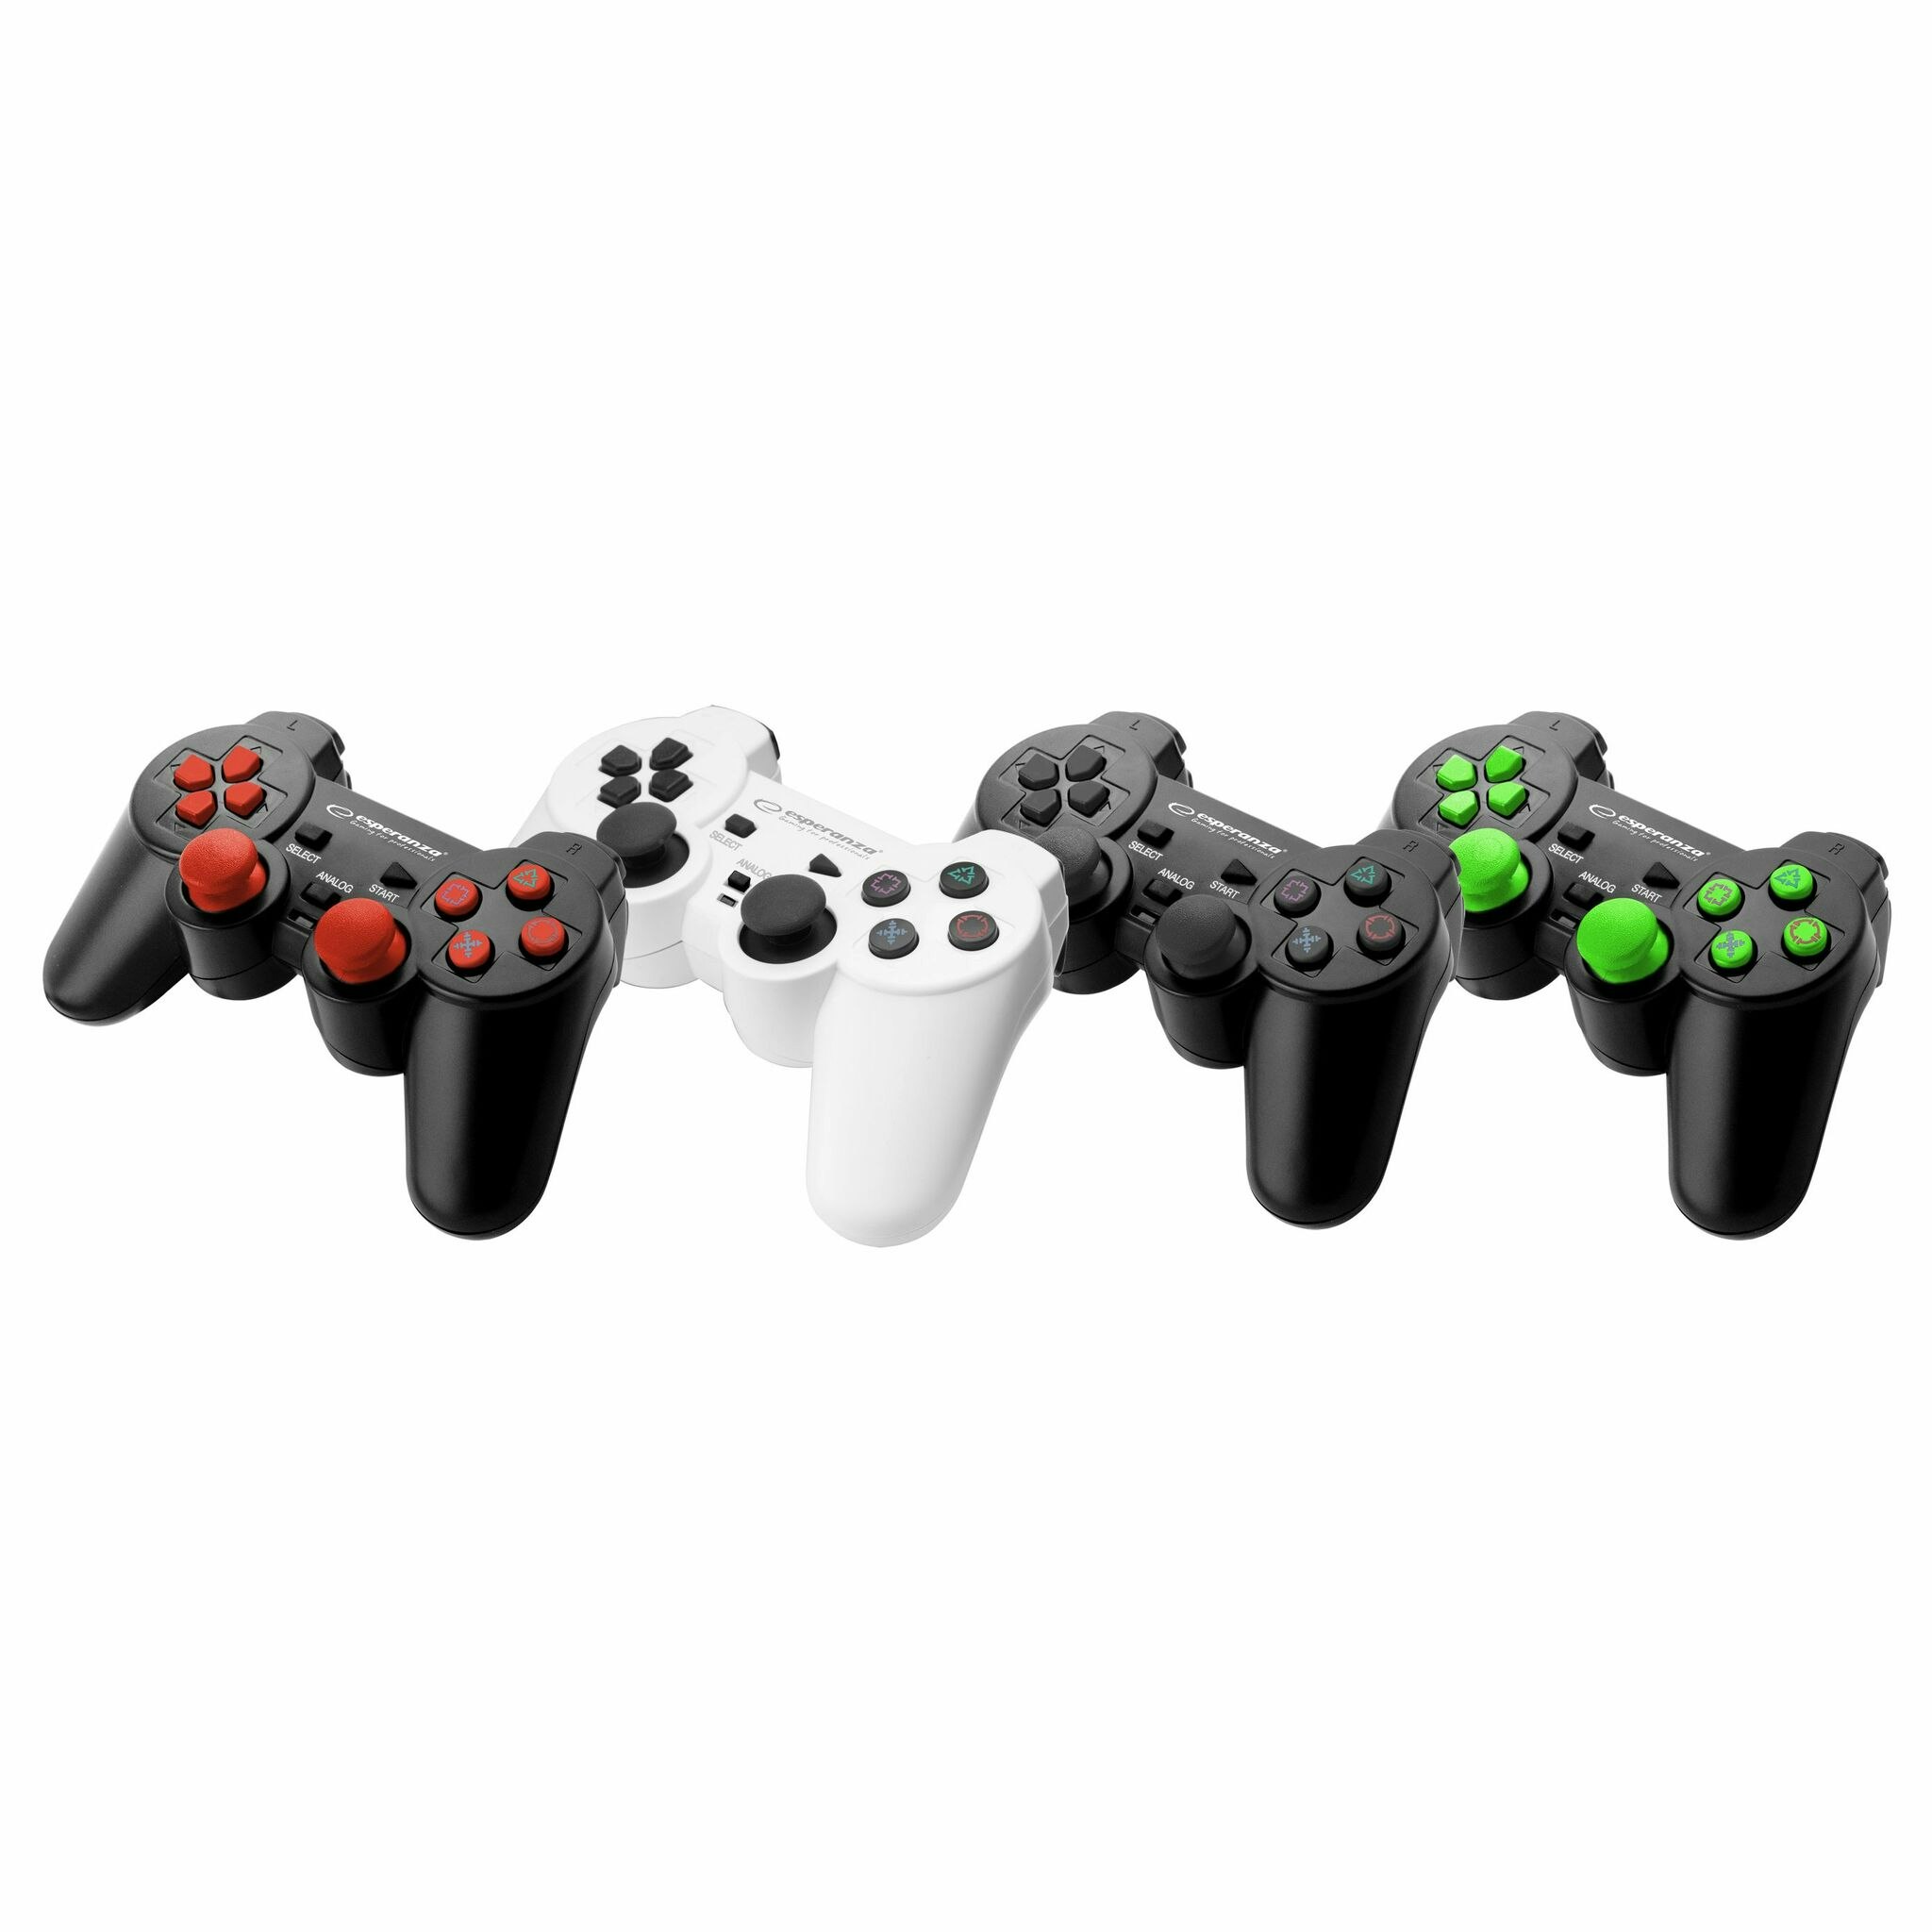 Handkontroll för PC2/PS3/PC, svart/röd